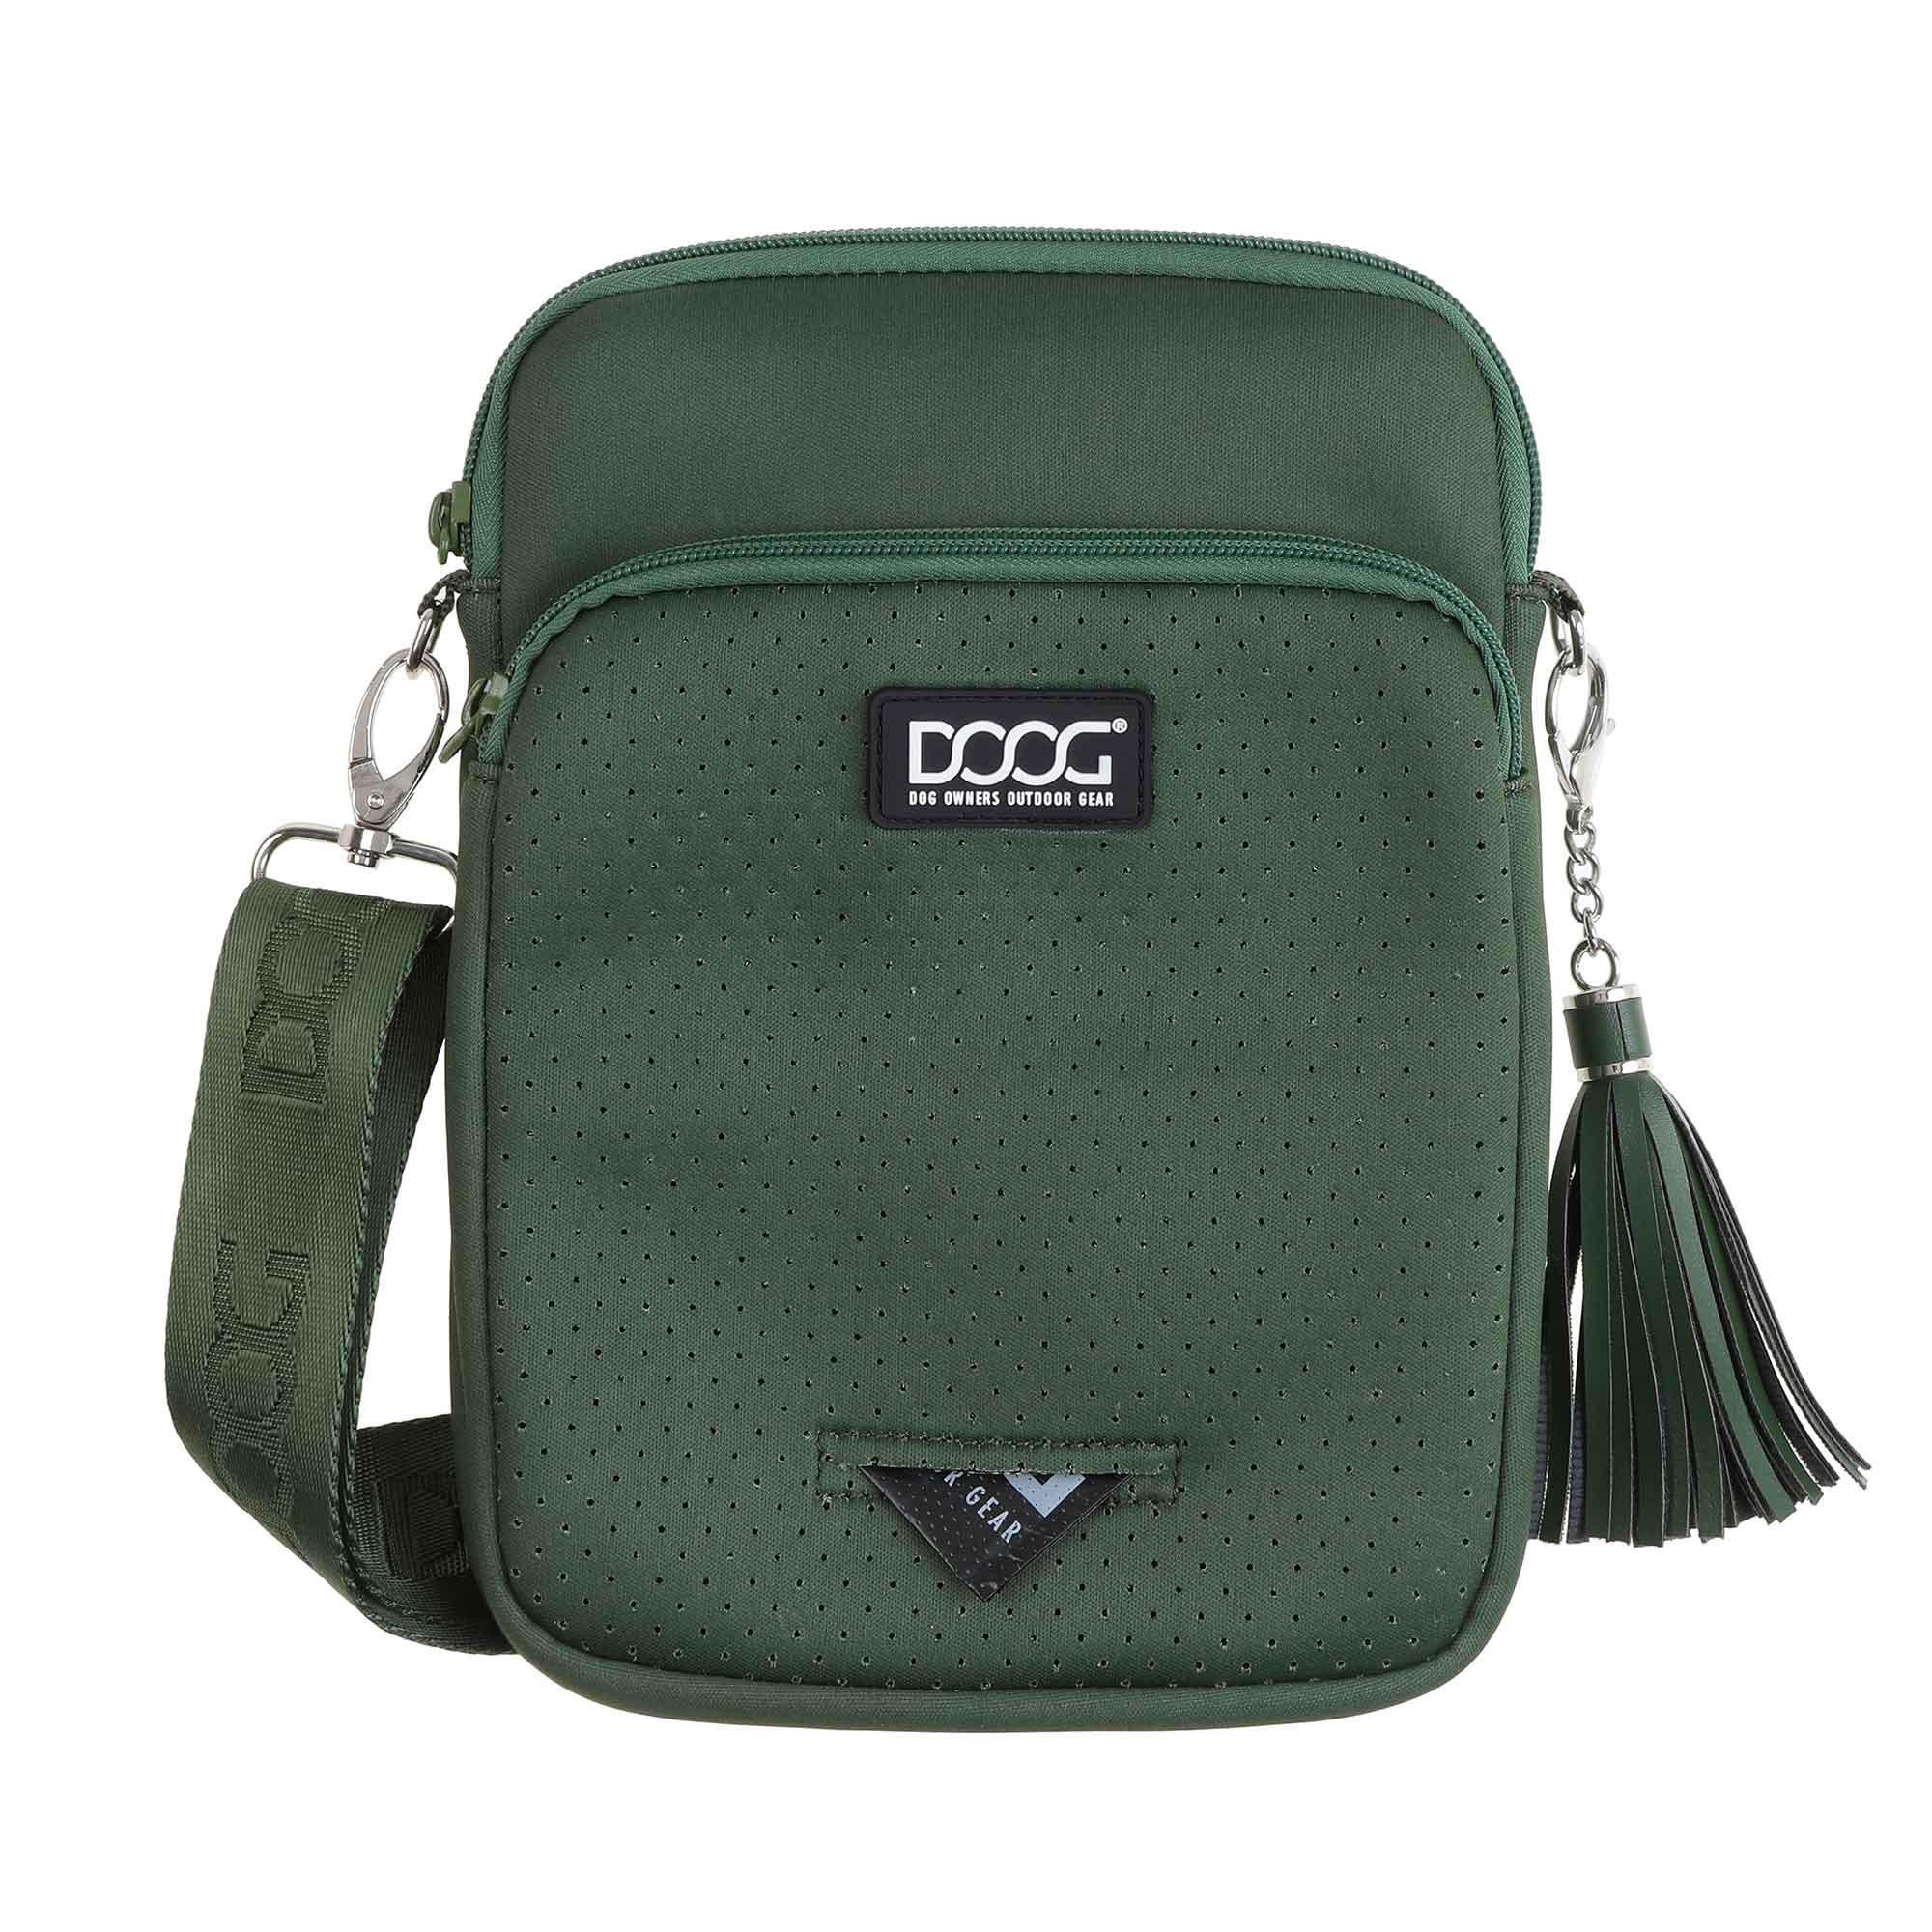 DOOG Neosport Walkie Bag Green 12" x 7" x 2"